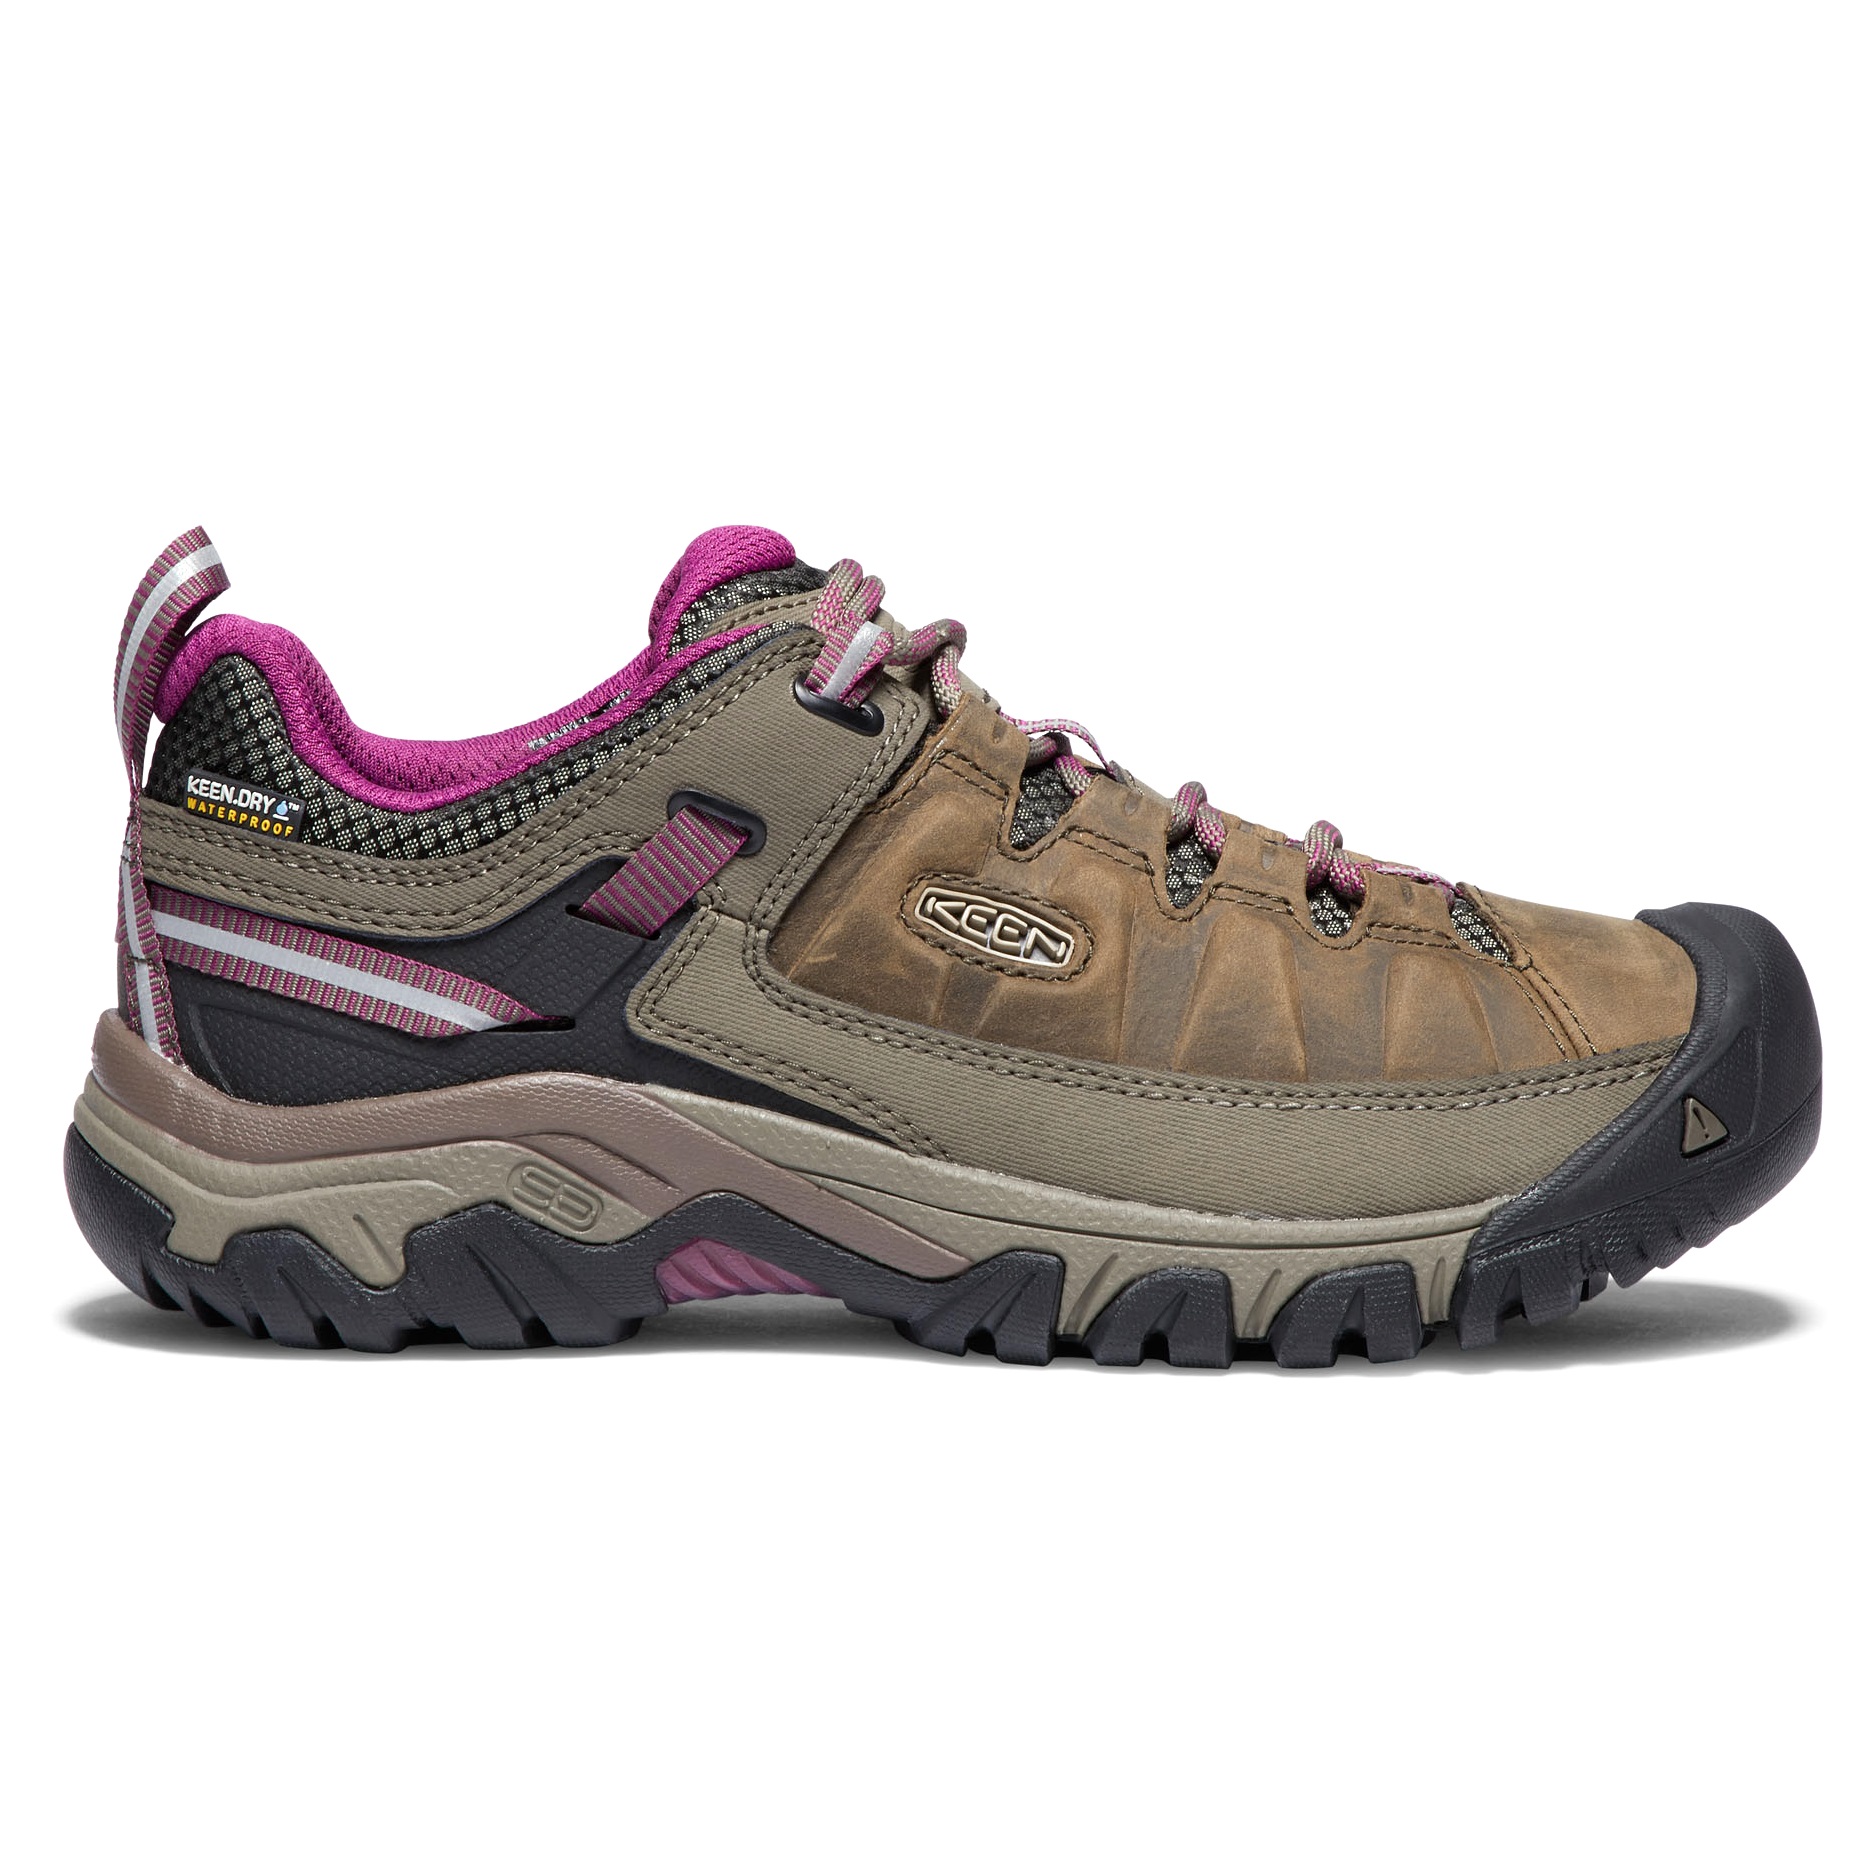 Women’s Targhee III Waterproof Hiking Shoes Weiss/Boysenberry